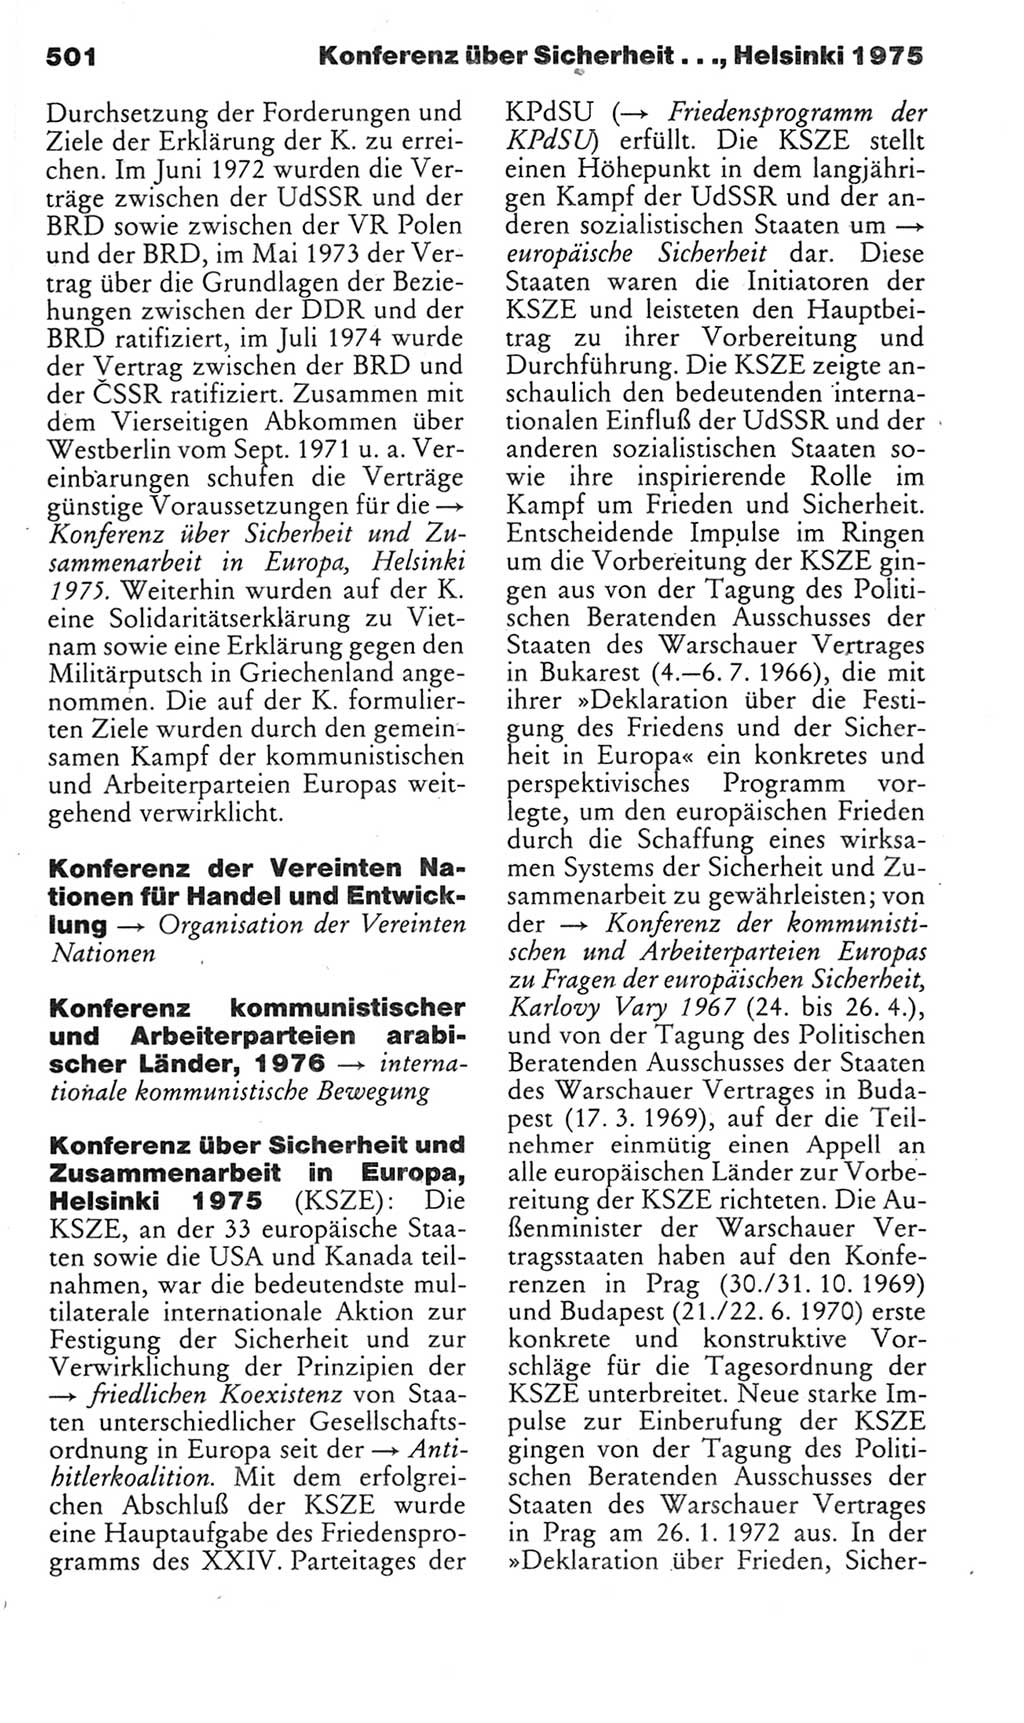 Kleines politisches Wörterbuch [Deutsche Demokratische Republik (DDR)] 1985, Seite 501 (Kl. pol. Wb. DDR 1985, S. 501)